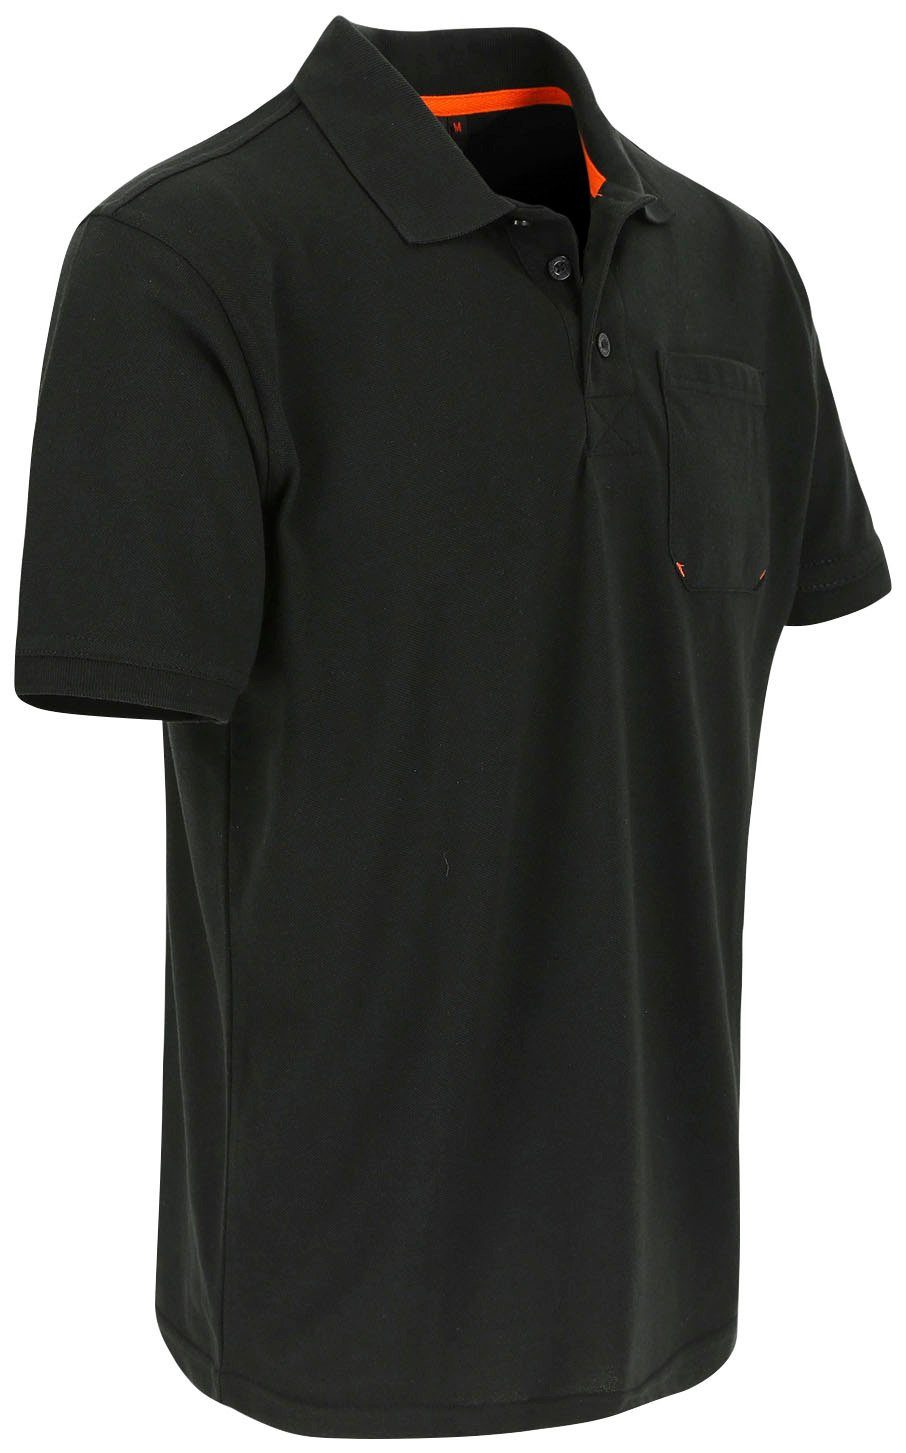 Farben Rippstrick-Kragen Brusttasche, Herock und Bündchen, Polohemd schwarz 1 verschiedene Poloshirt Kurzärmlig Leo